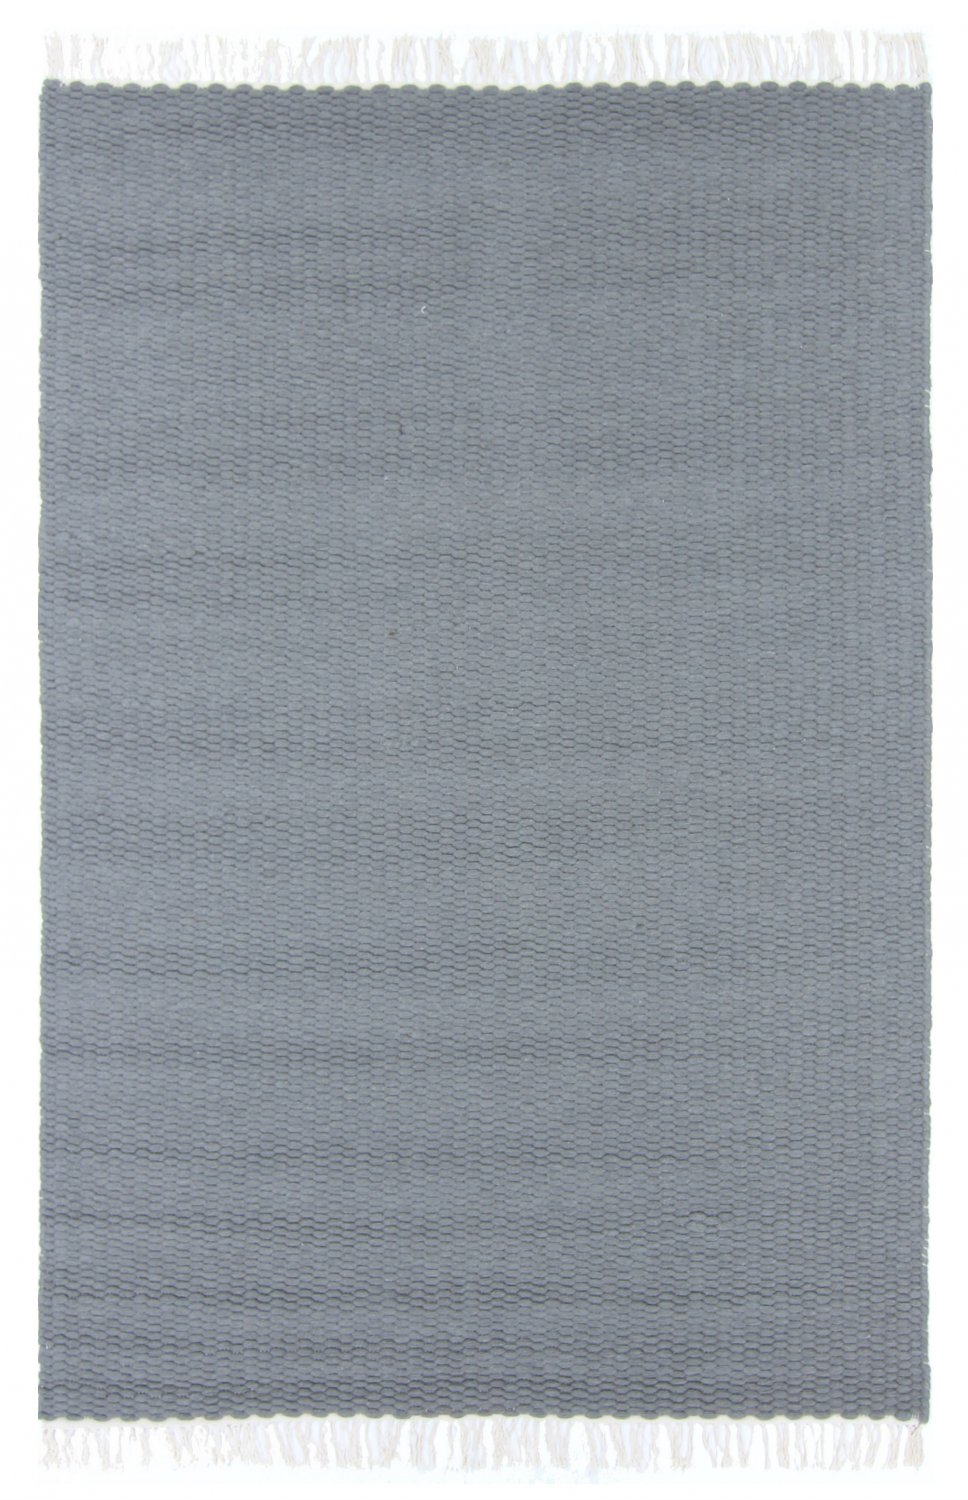 Ullteppe - Cartmel (grå/hvit)